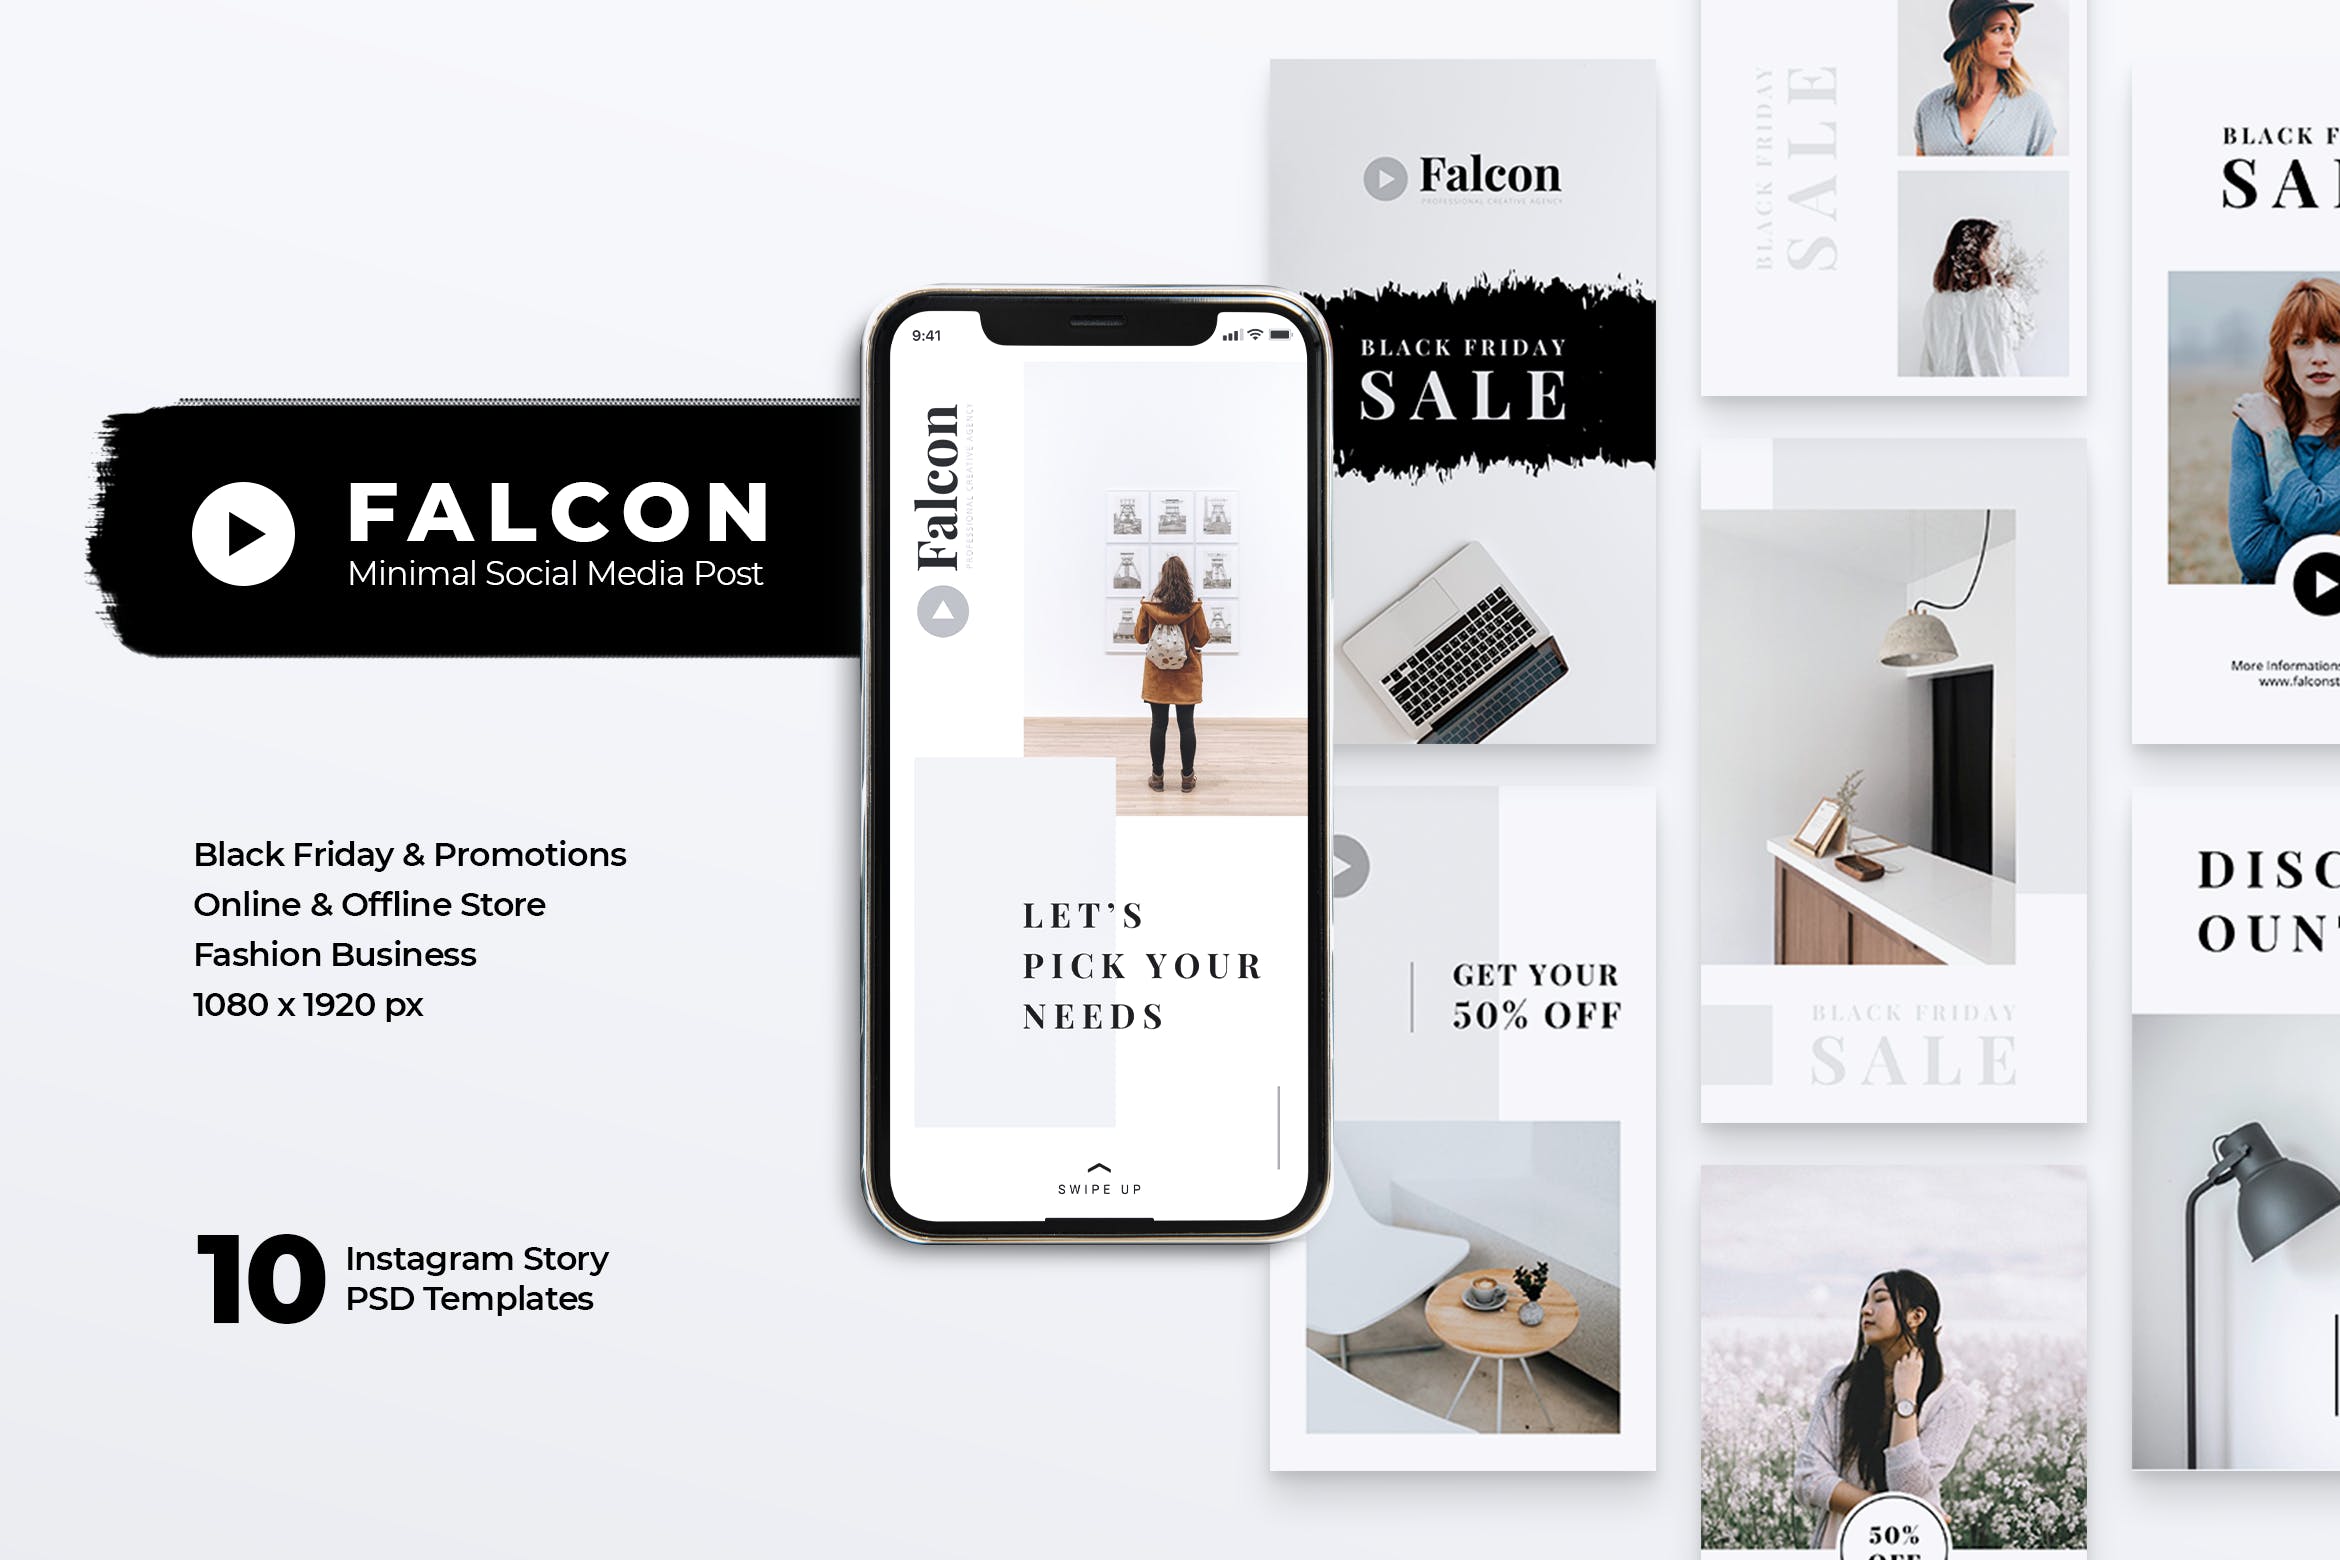 创意设计代理Instagram品牌推广设计模板第一素材精选 FALCON Creative Agency Instagram Stories插图